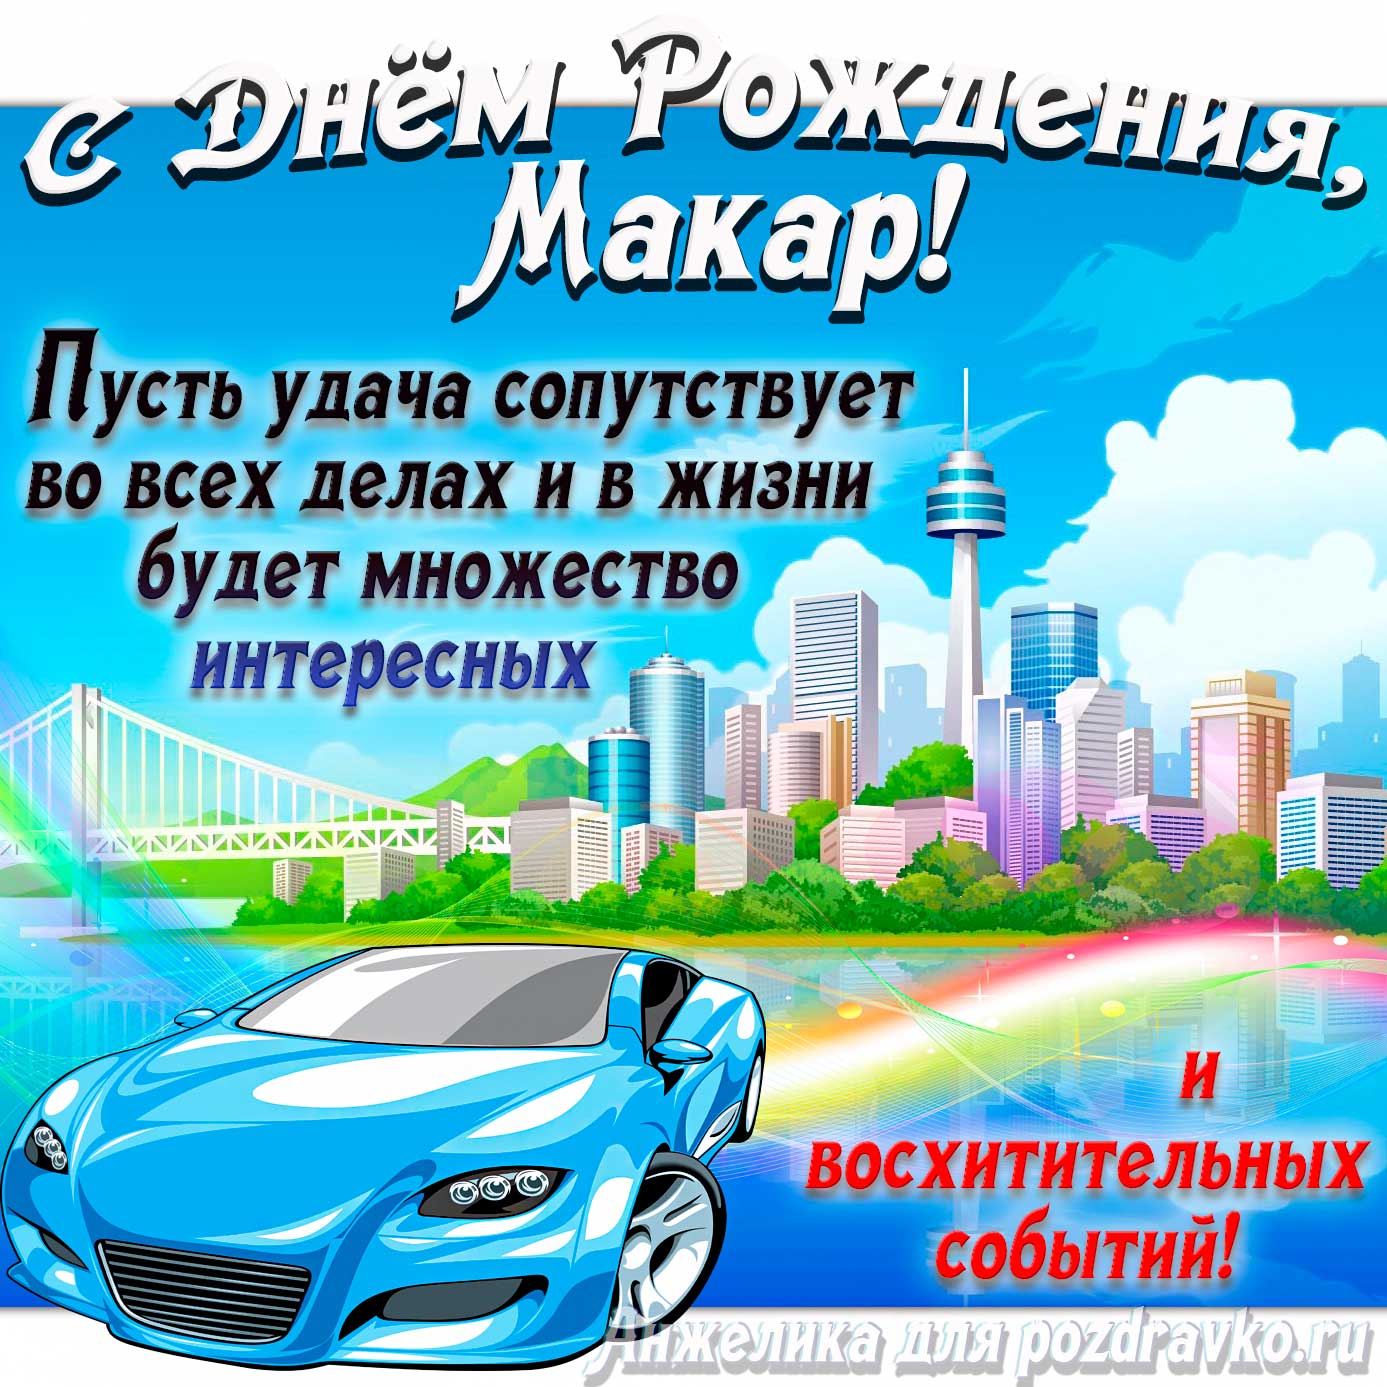 Открытка - с Днём Рождения Макар с голубой машиной и пожеланием. Скачать бесплатно или отправить картинку.